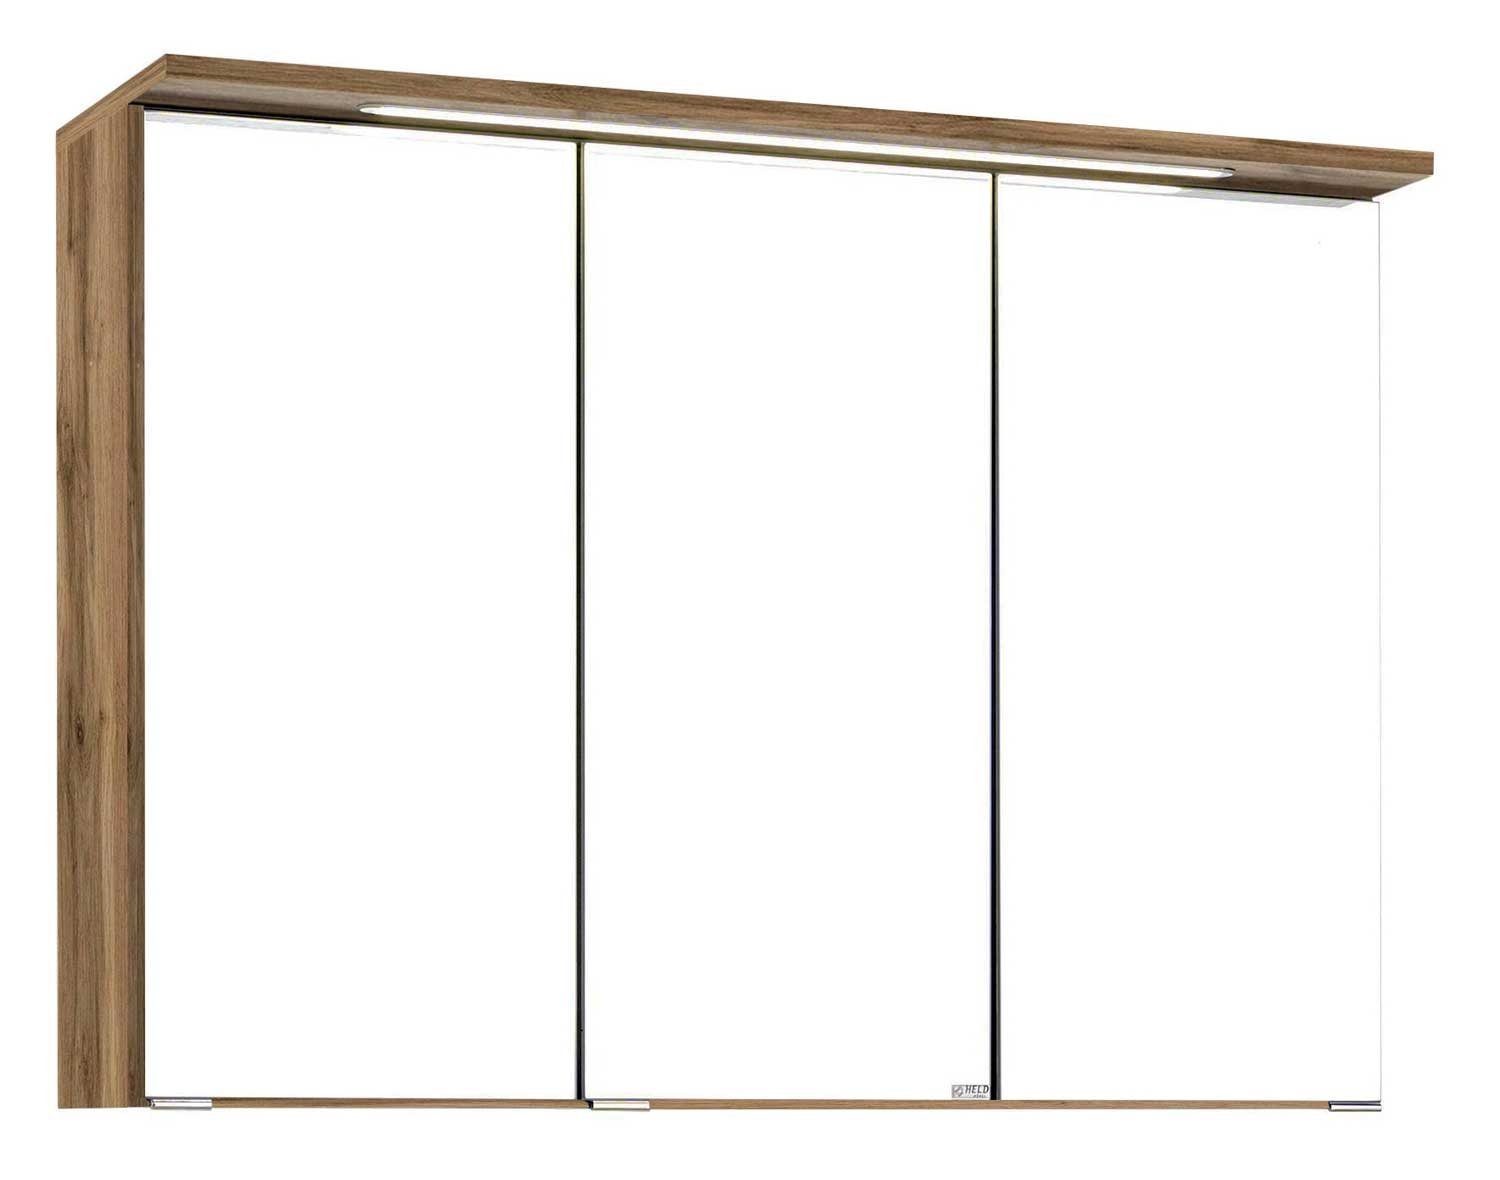 HELD MÖBEL Spiegelschrank MULTI, B 80 cm, Wotan Eiche Dekor, mit LED-Kranzbodenbeleuchtung Korpus Wotaneiche / Front Spiegel | Wotaneiche